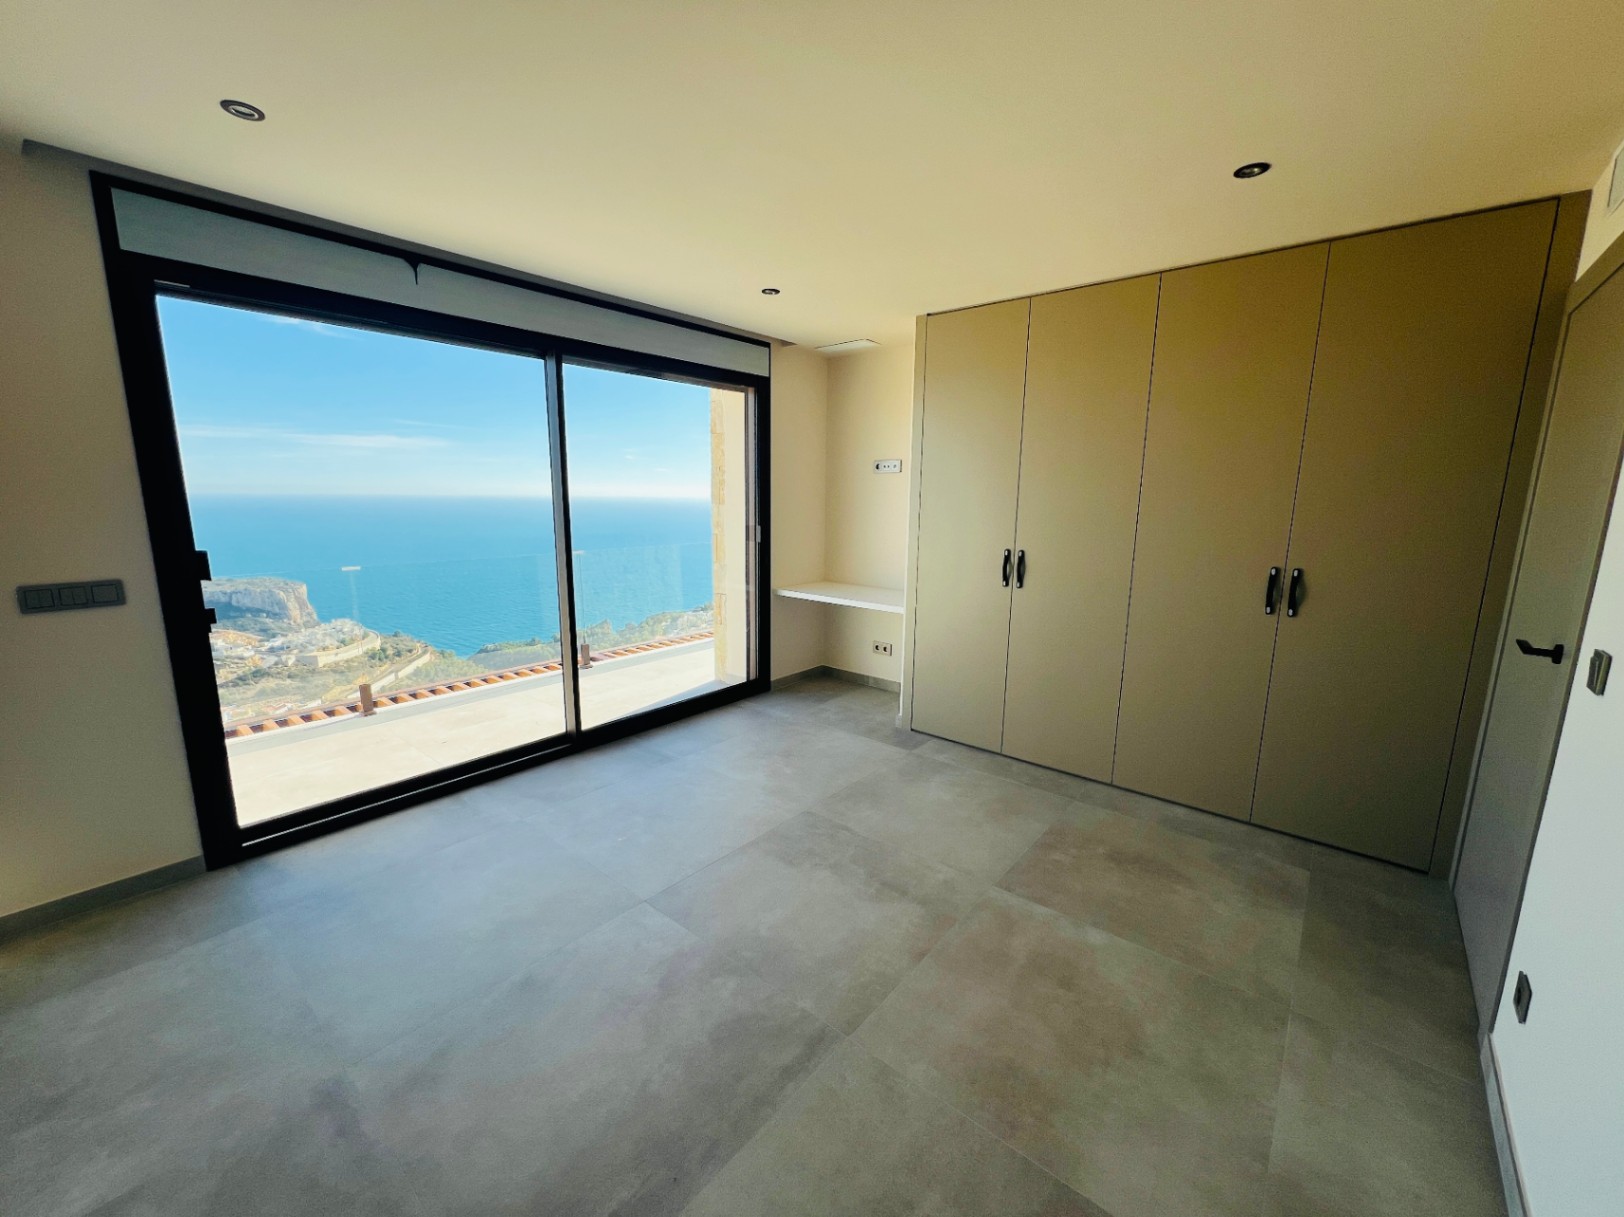 Villa de luxe avec vue panoramique sur la mer